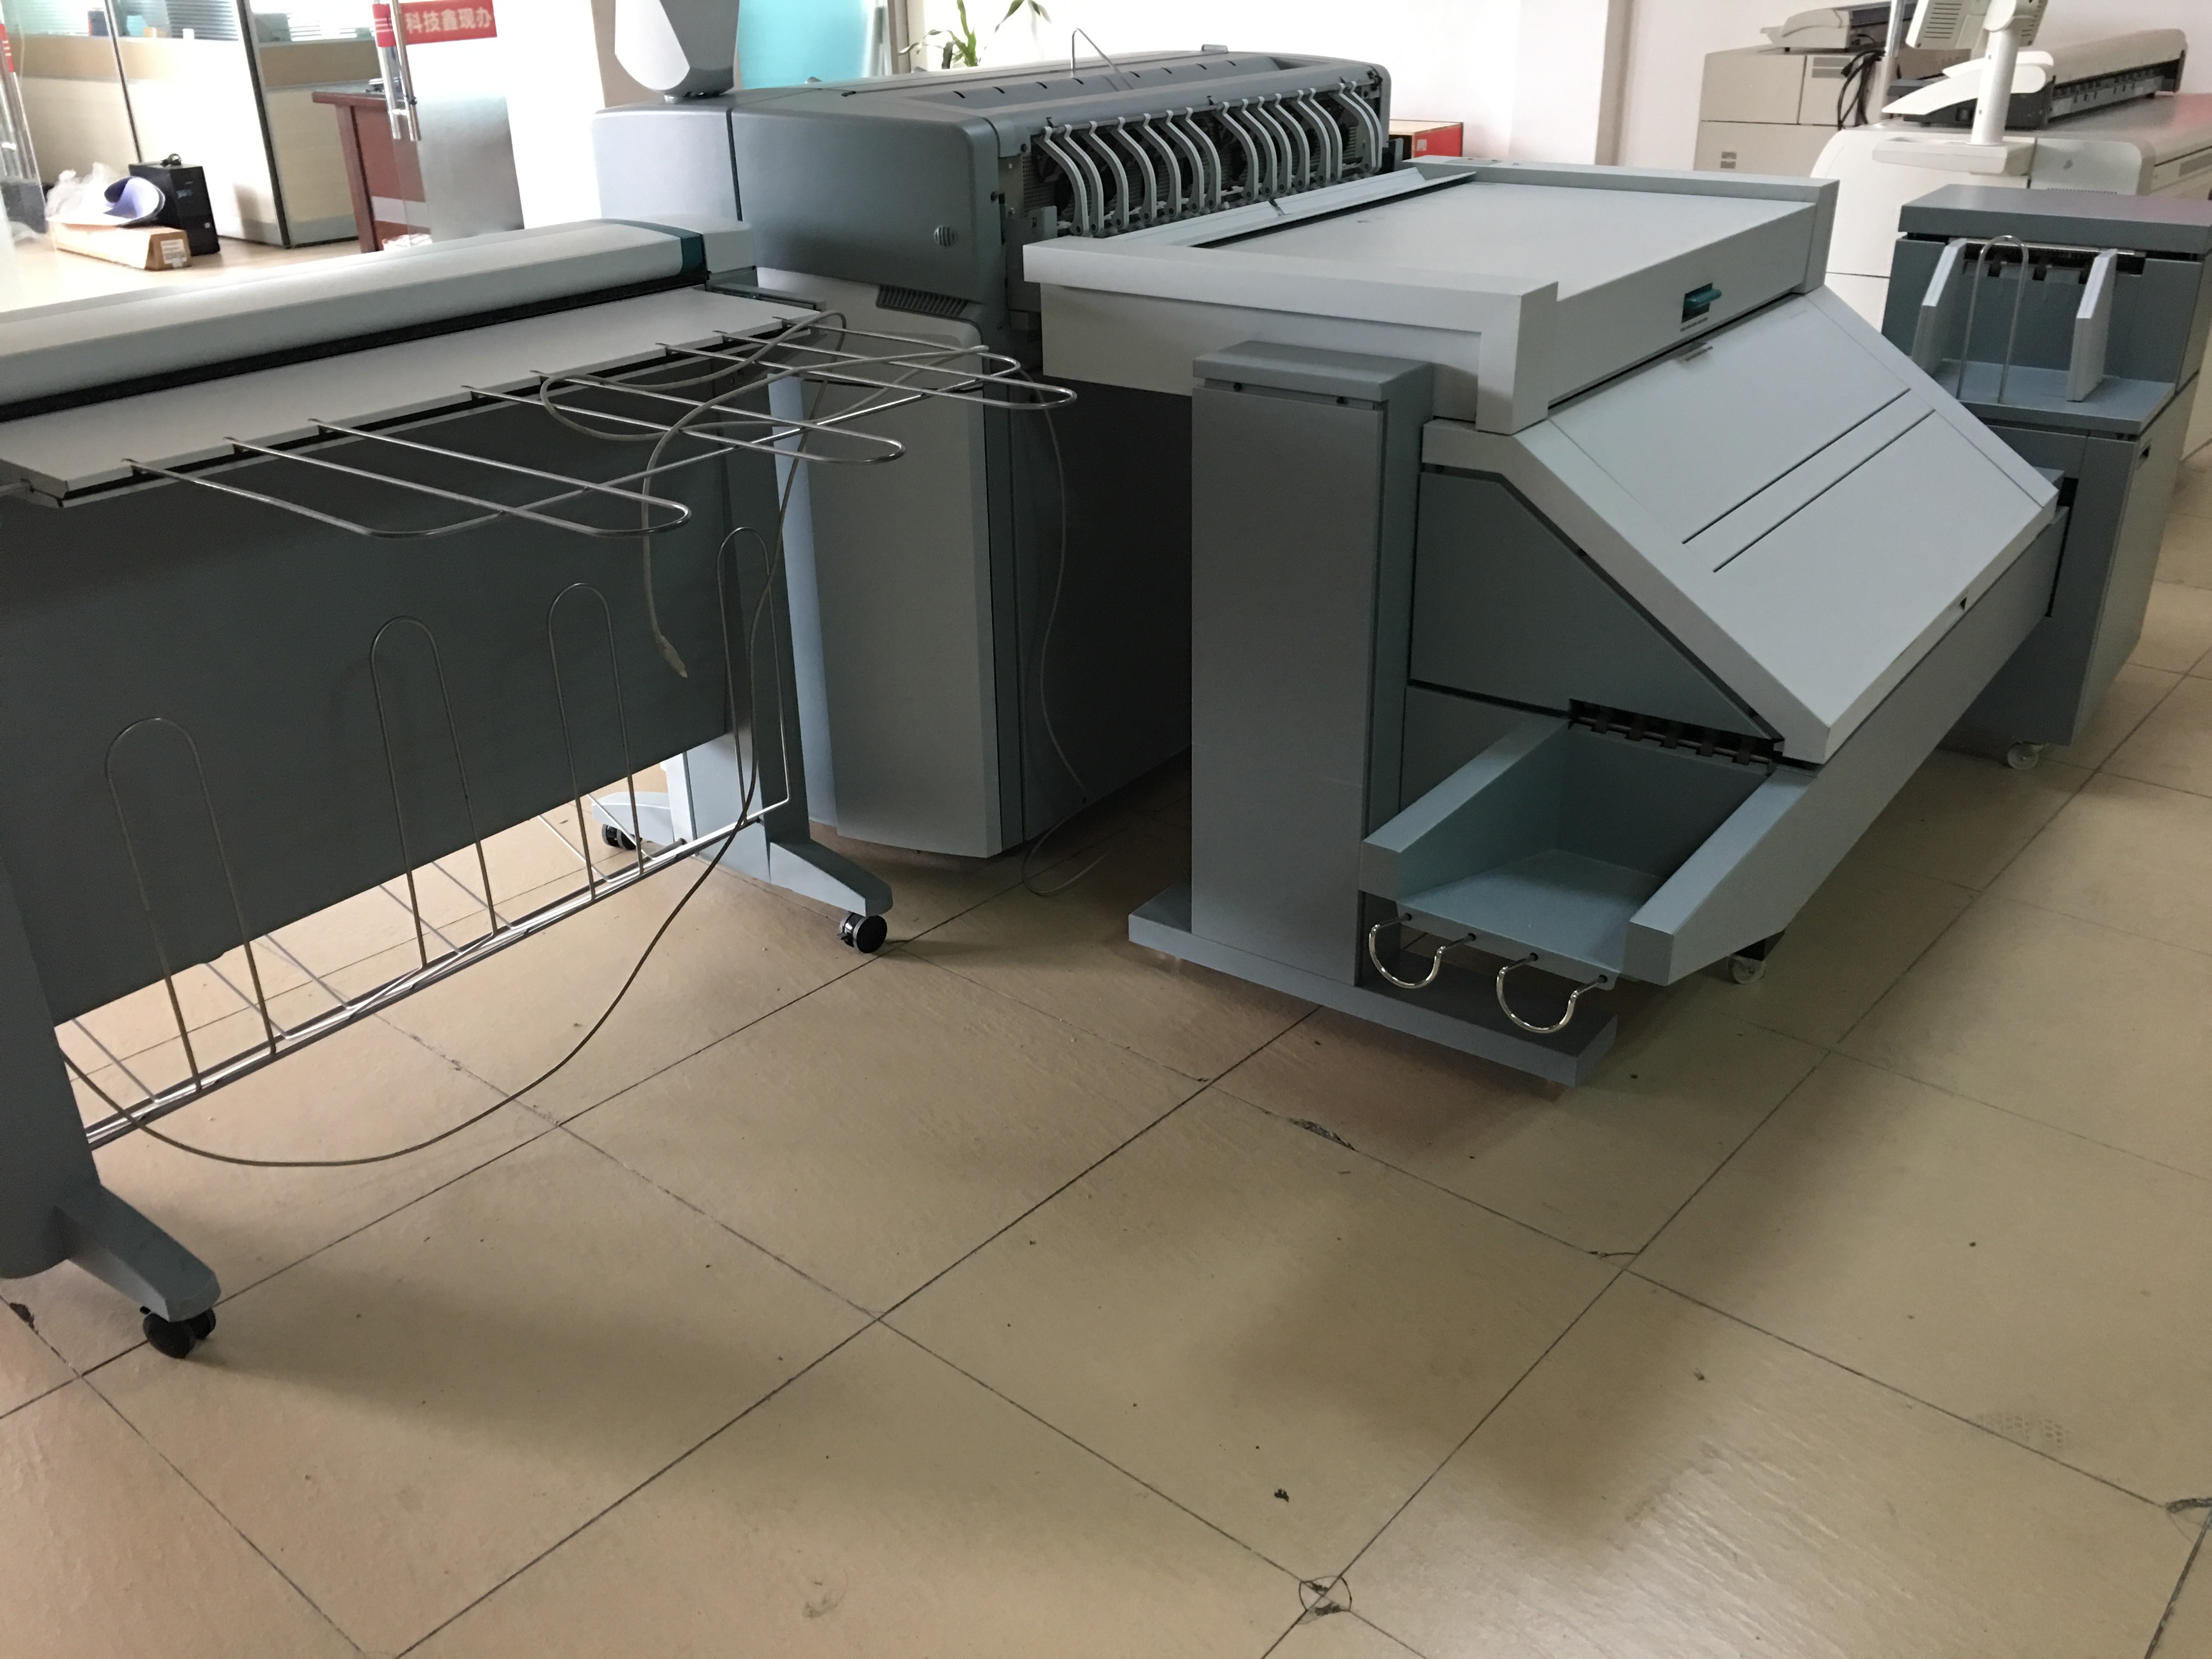 奥西TDS750工程复印机 奥西TDS750二手工程复印机数码复合复印机激光蓝图机A0图纸彩色扫描仪